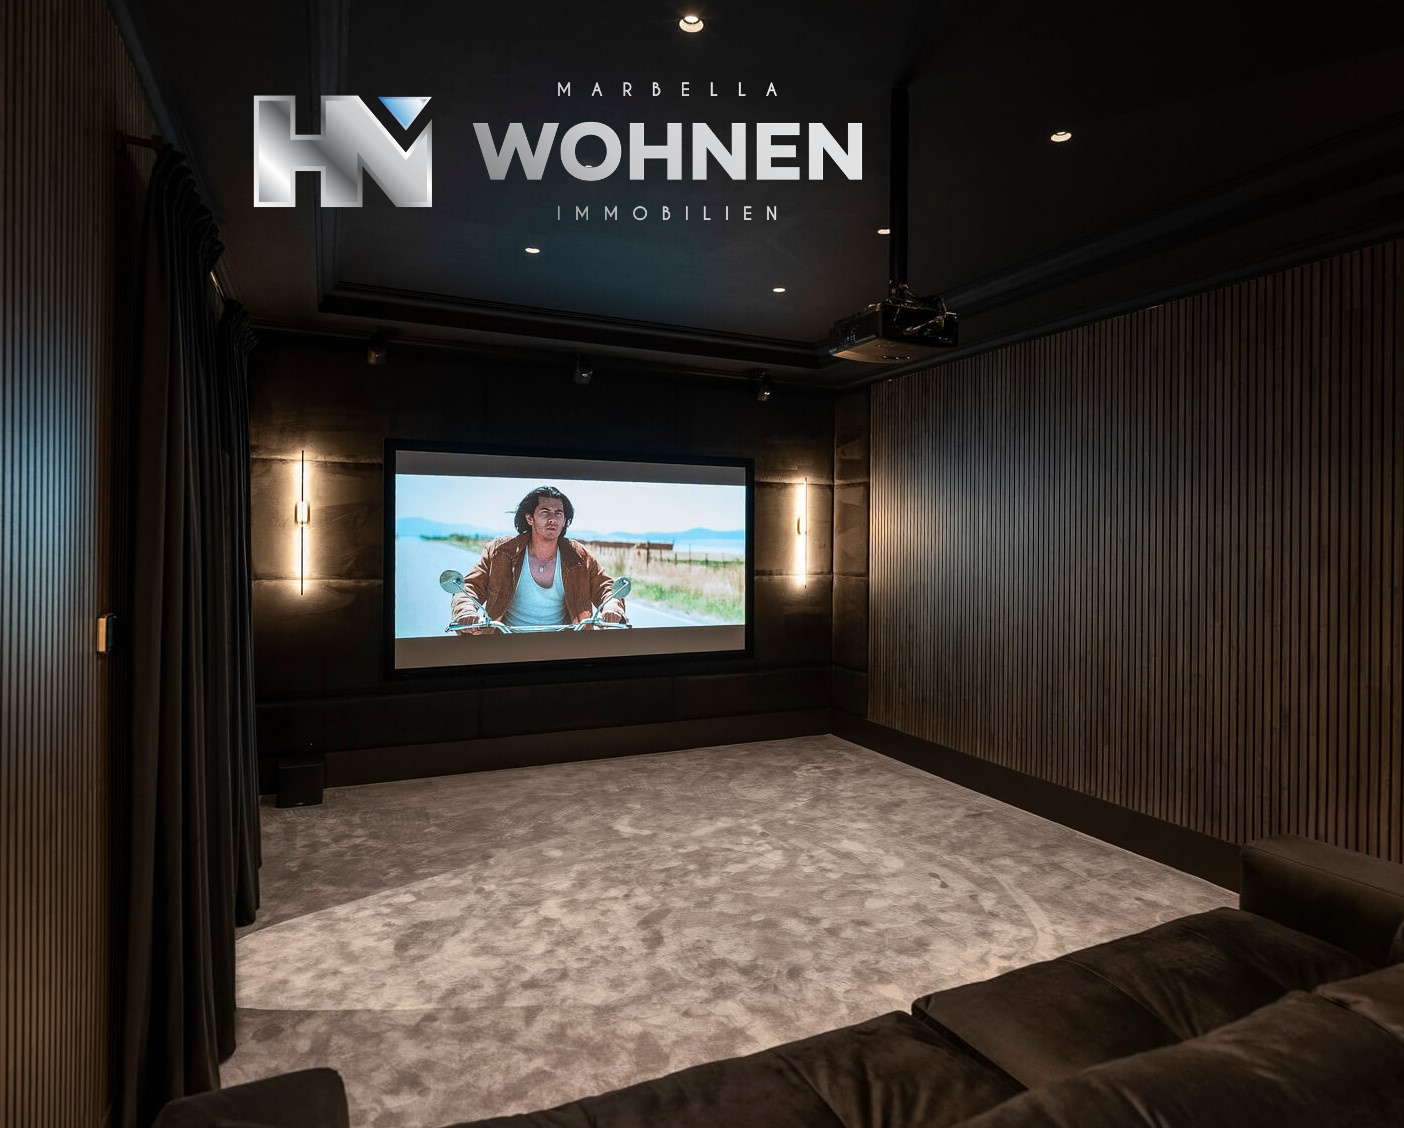 MARBELLA WOHNEN – HOME CINEMA – Design and Installation